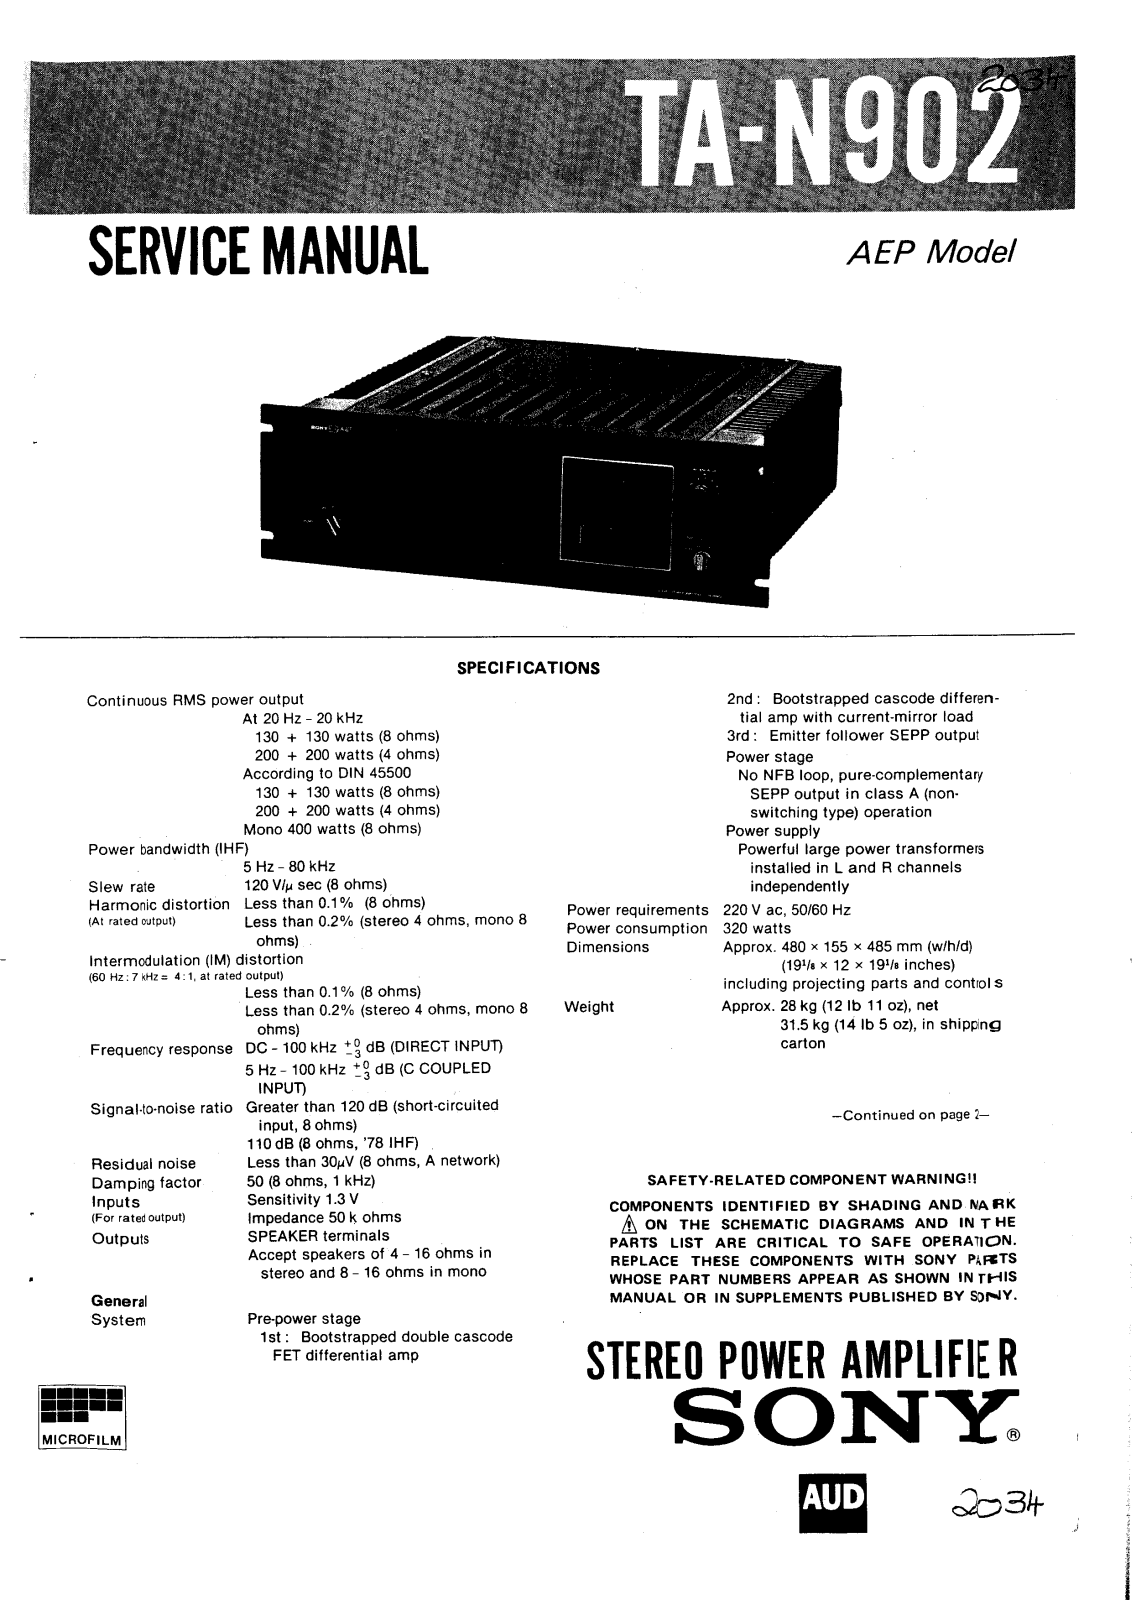 Sony TAN-902 Service manual